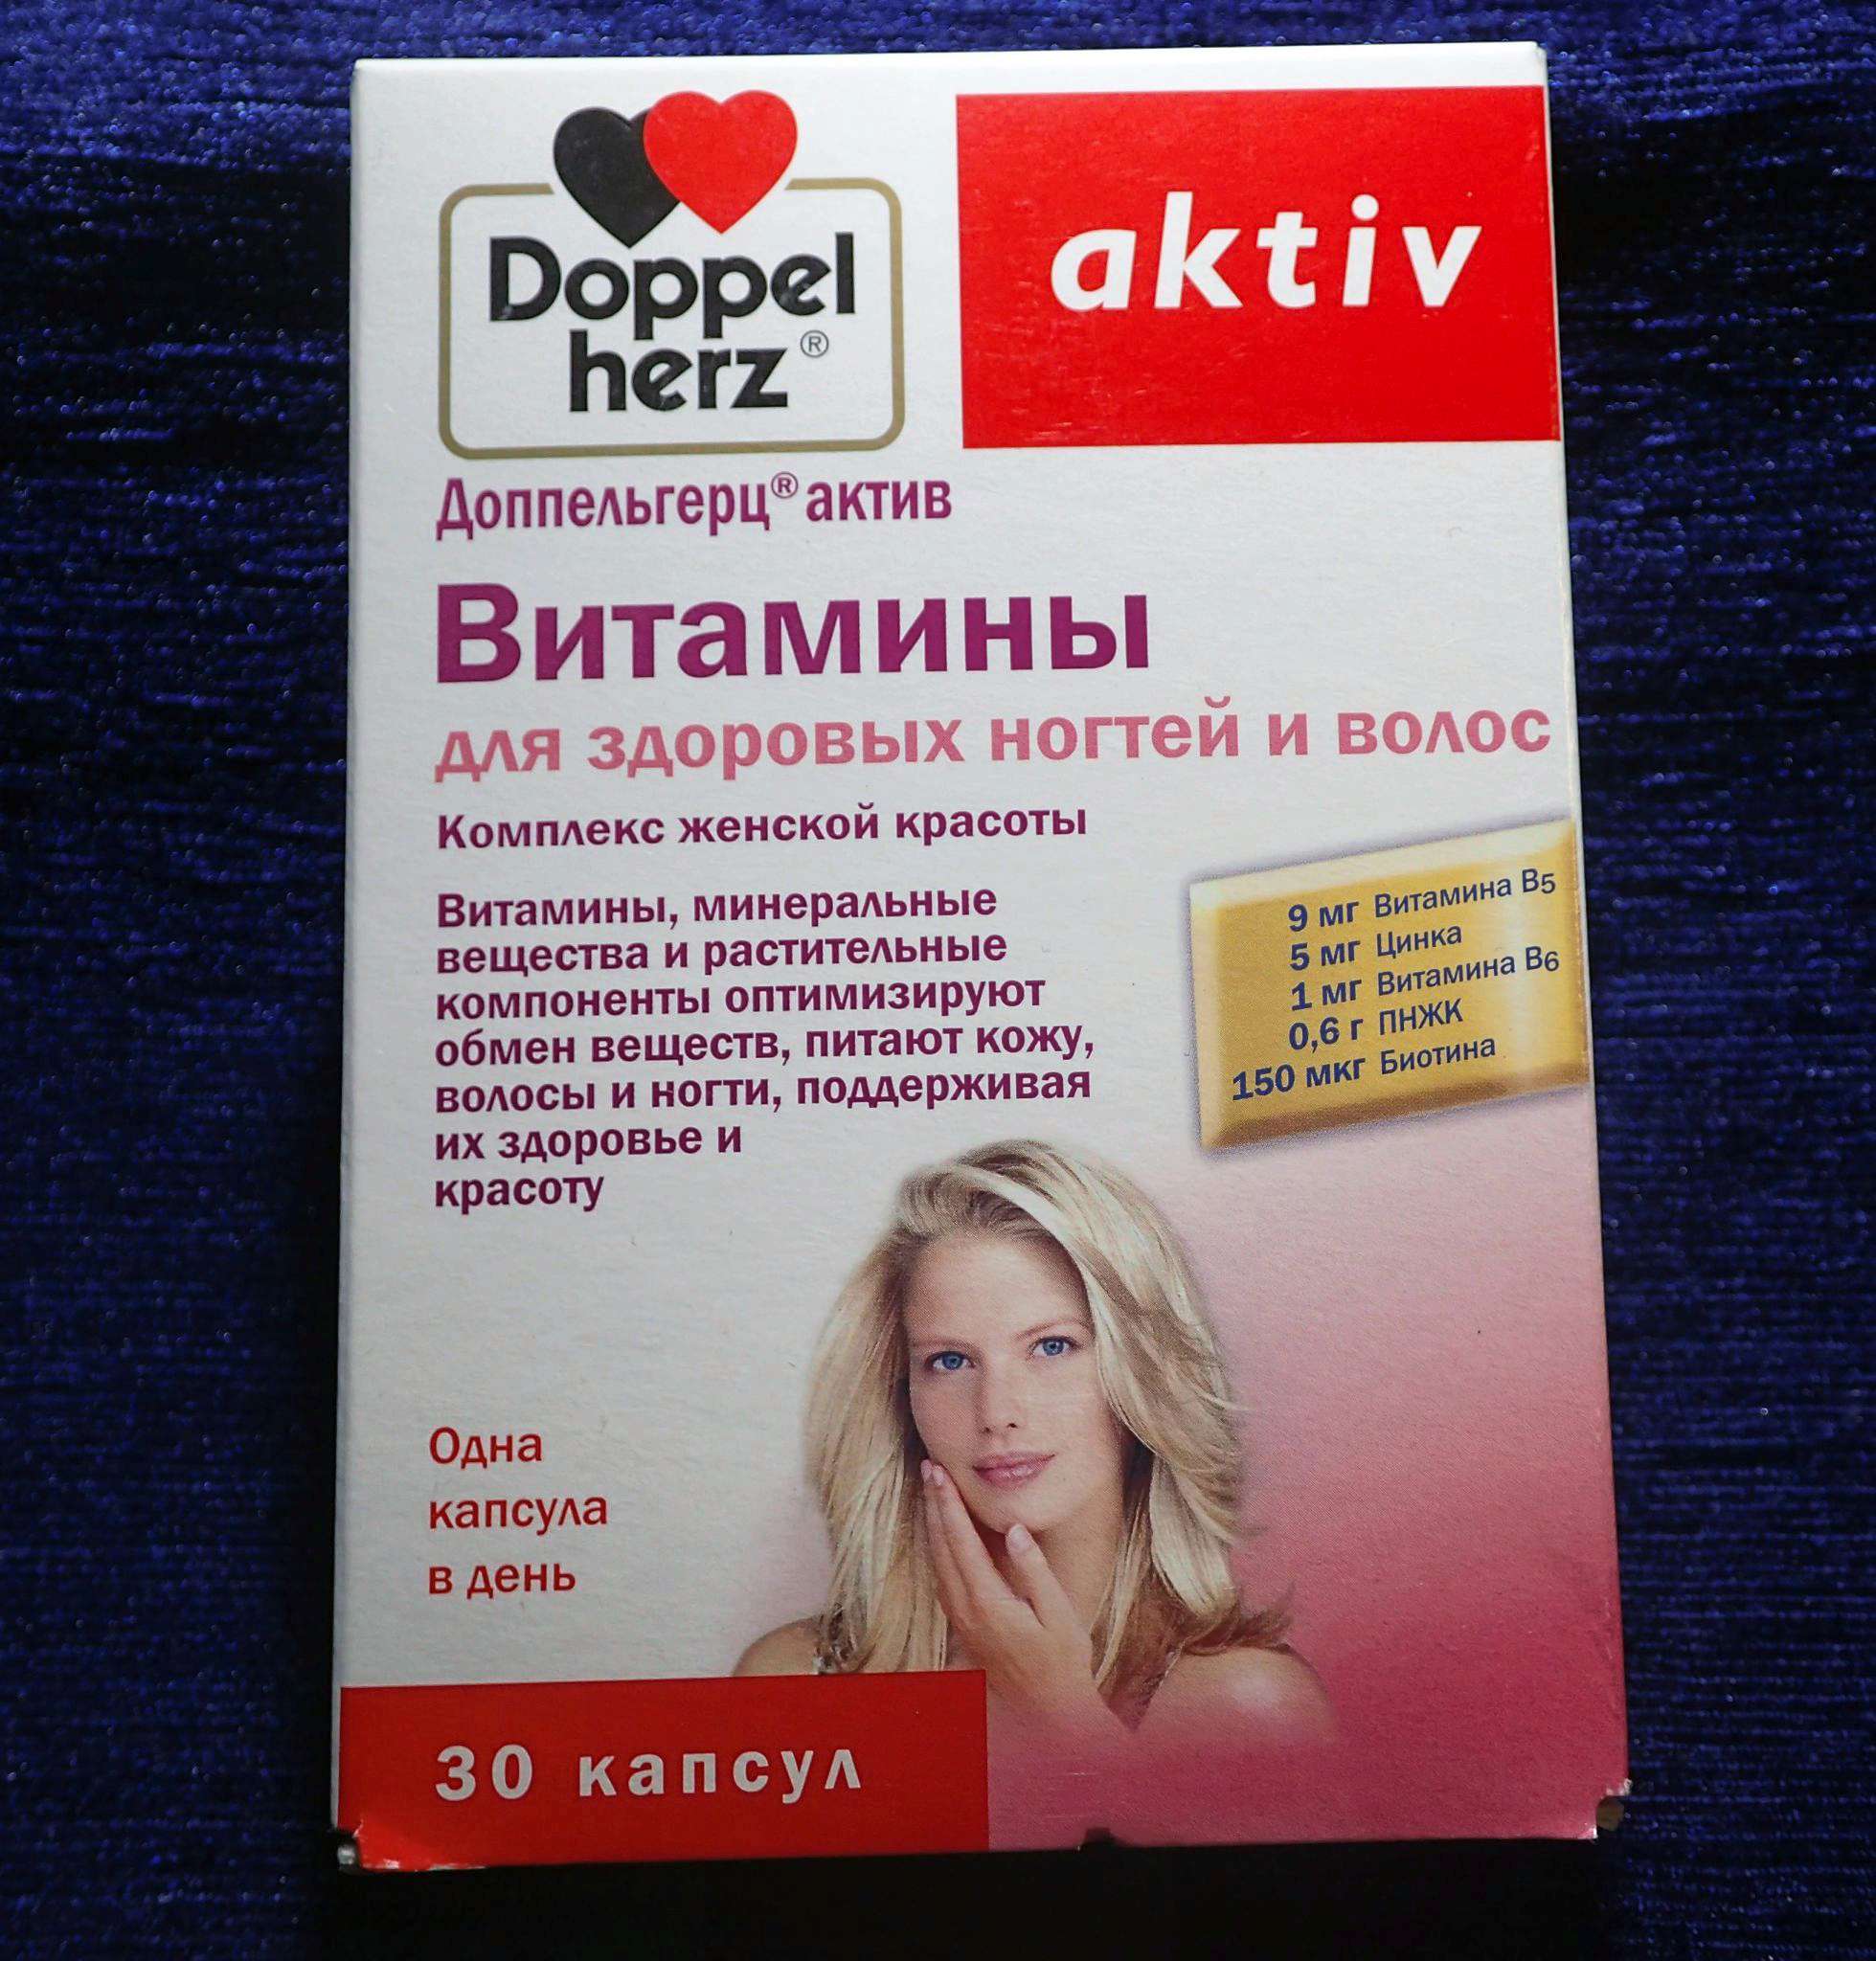 Витамин после менопаузы. Витаминно-минеральный комплекс для женщин Doppelherz. Doppel Herz aktiv витамины для волос. Доппельгерц Актив менопауза. Доппельгерц Актив витамины для женщин.